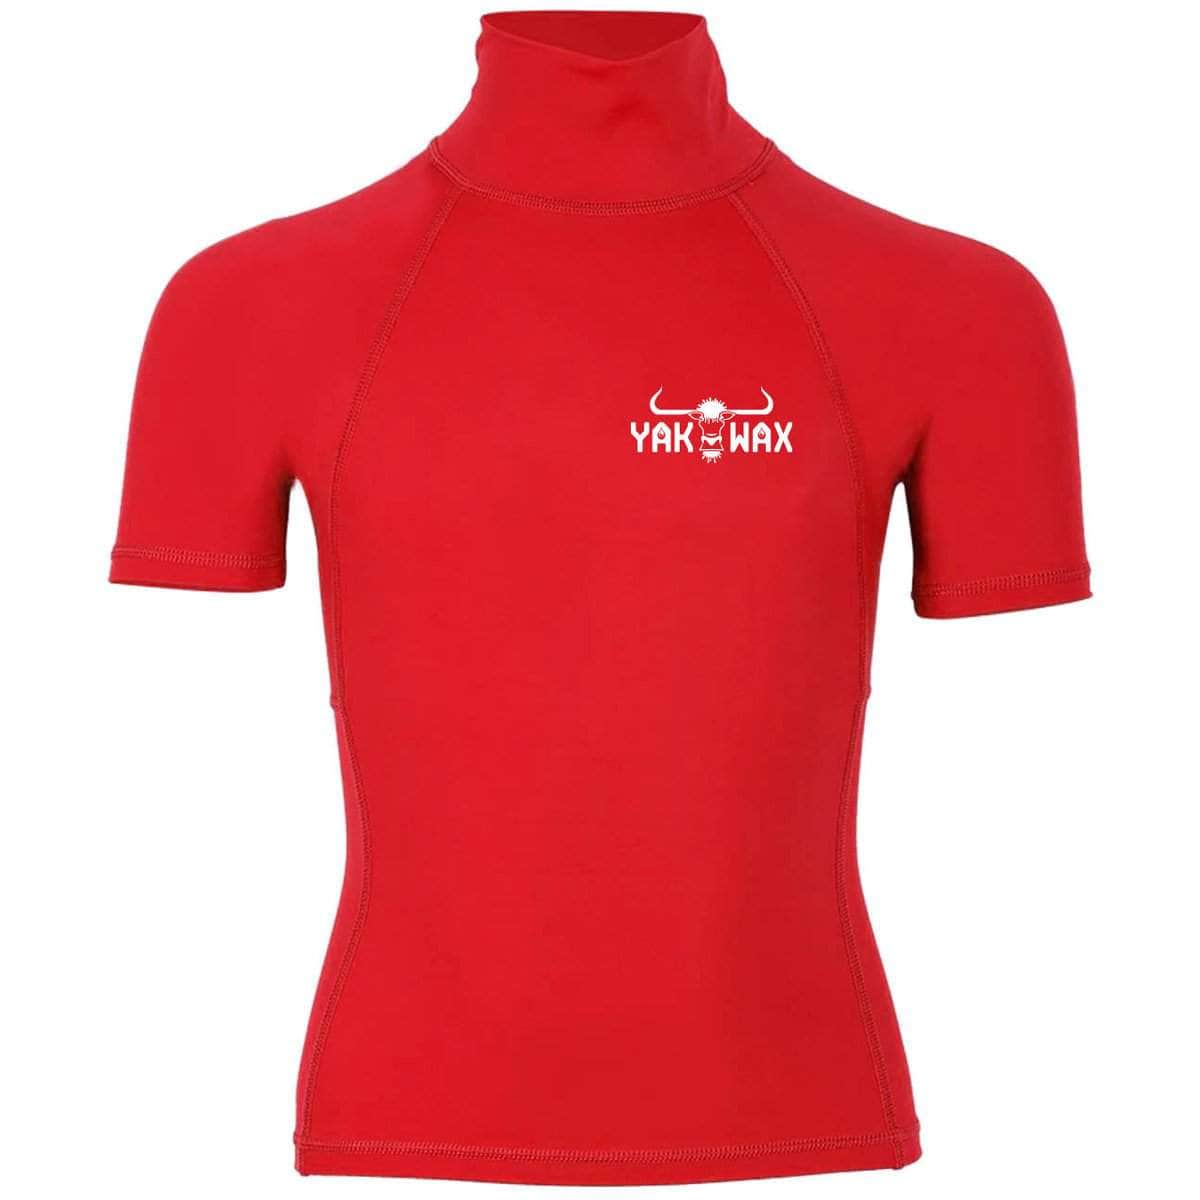 Yakwax Youth Kids OG Logo Short Sleeve Rash Vest Red - Kids UV Rash Vest by Yakwax